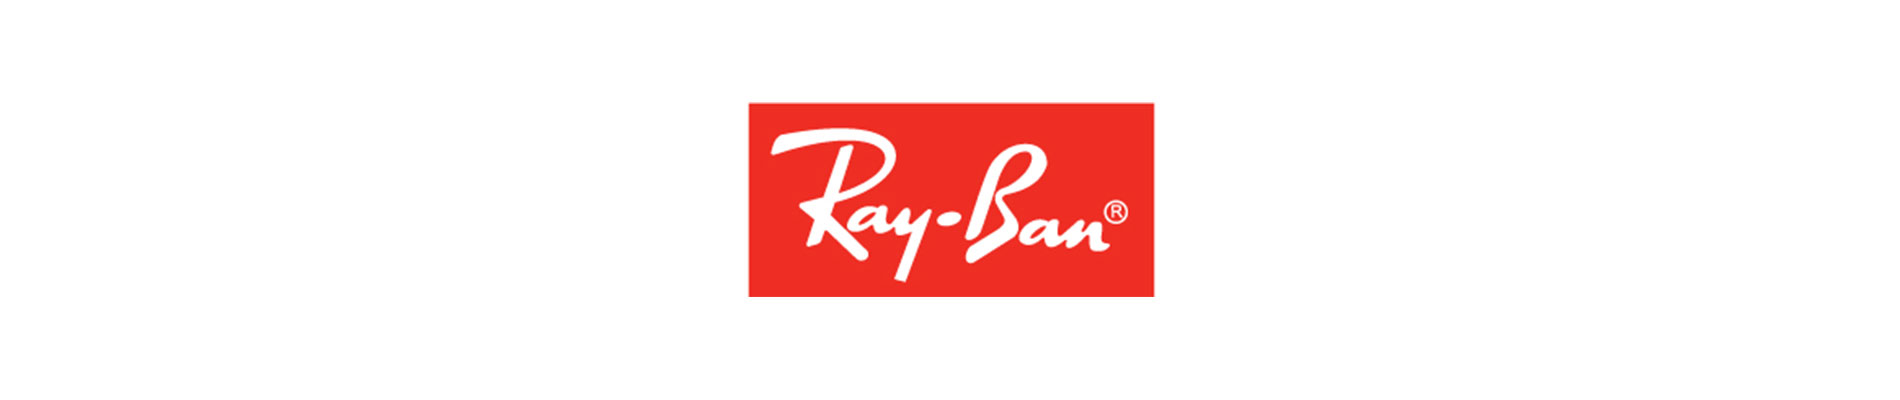 ray-ban eyewear designer frame logo